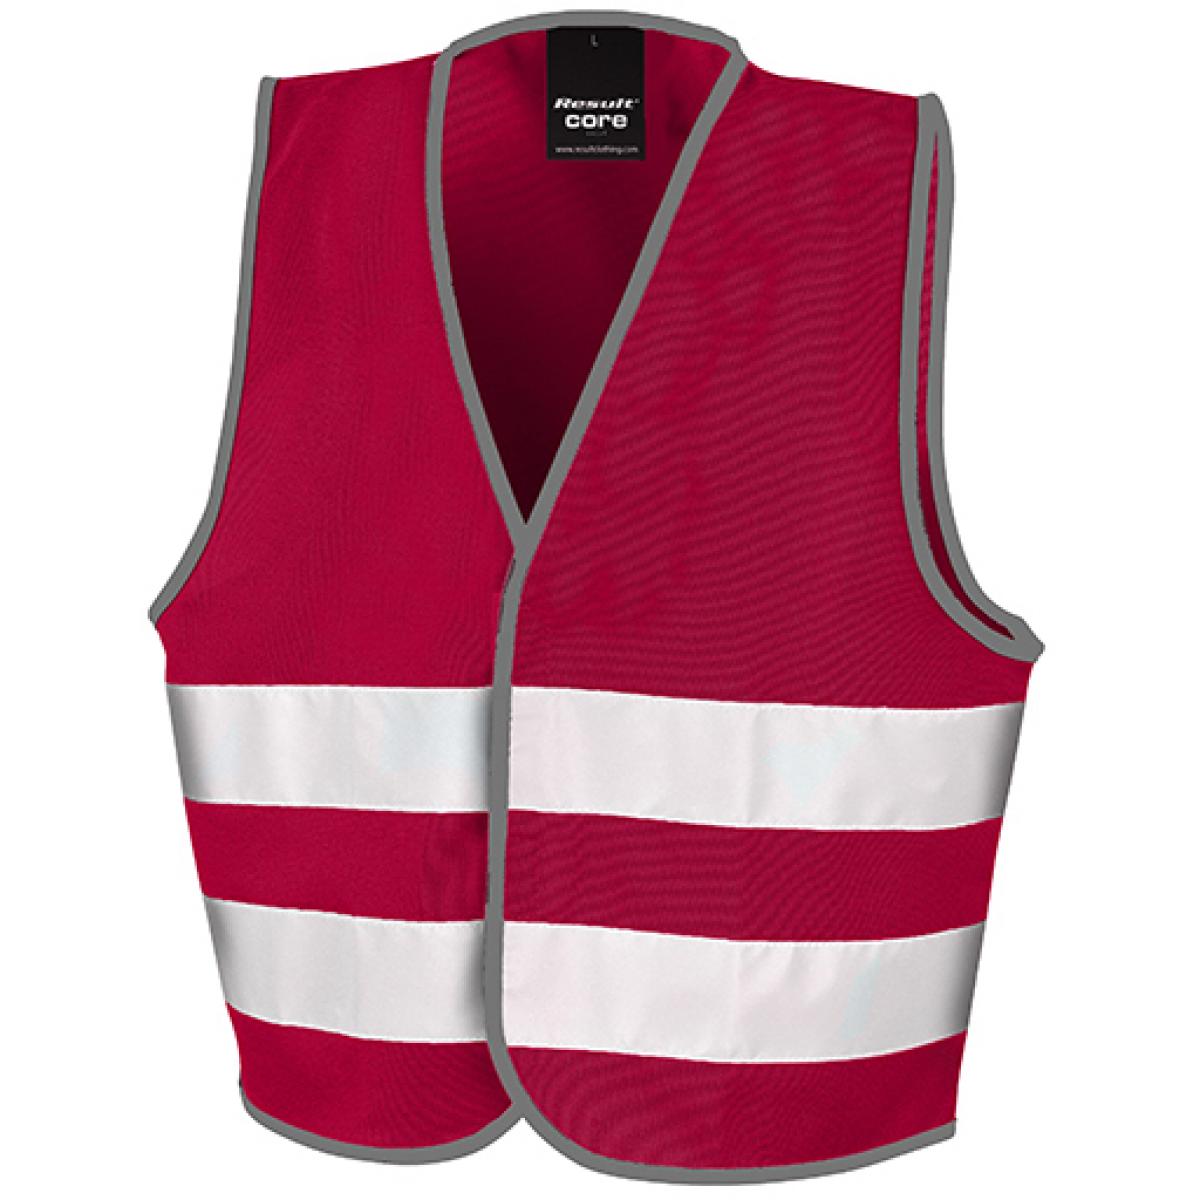 Hersteller: Result Core Herstellernummer: R200J Artikelbezeichnung: Kinder Sicherheitsweste - Junior Safety Vest Farbe: Burgundy